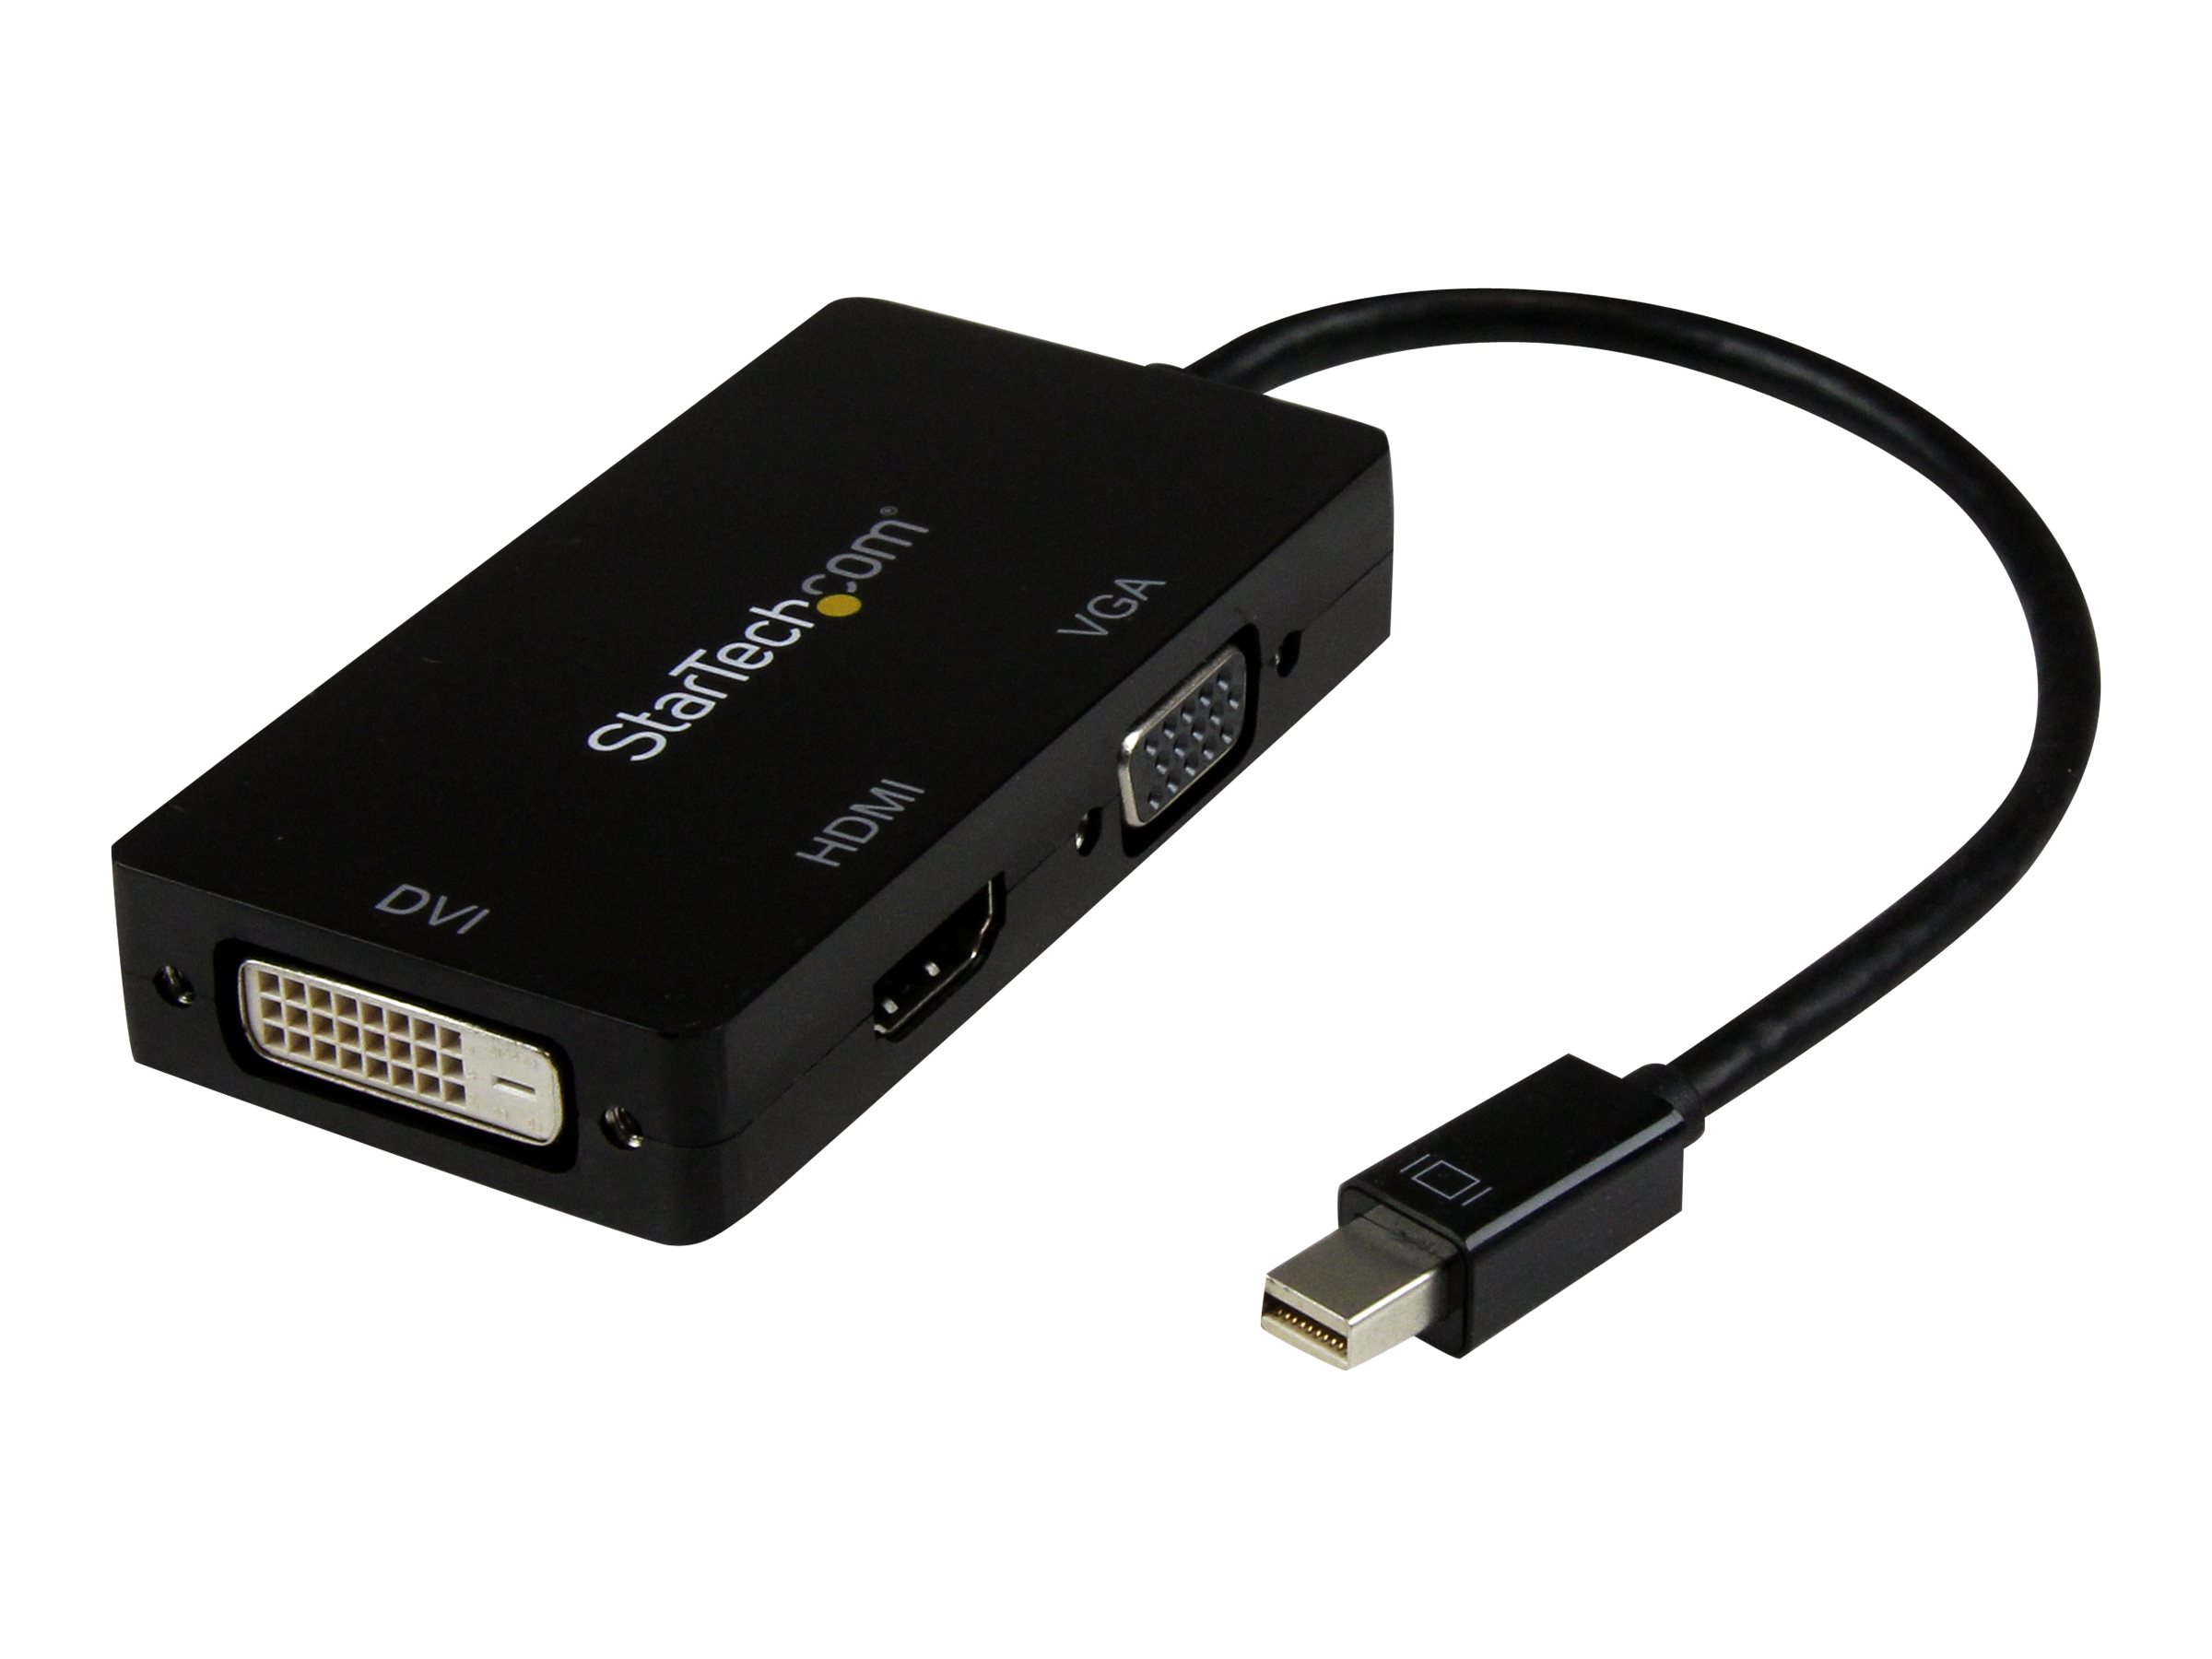 StarTech.com Adaptateur Mini DisplayPort 3 en 1 - 1080p - Répartiteur Mini DP / Thunderbolt vers HDMI / VGA / DVI pour Votre Moniteur (MDP2VGDVHD) - Adaptateur vidéo - Mini DisplayPort mâle pour HD-15 (VGA), DVI-D, HDMI femelle - 27 cm - noir - actif, support 1920 x 1200 (WUXGA) - pour P/N: DKT31CMDPHPD - MDP2VGDVHD - Câbles HDMI